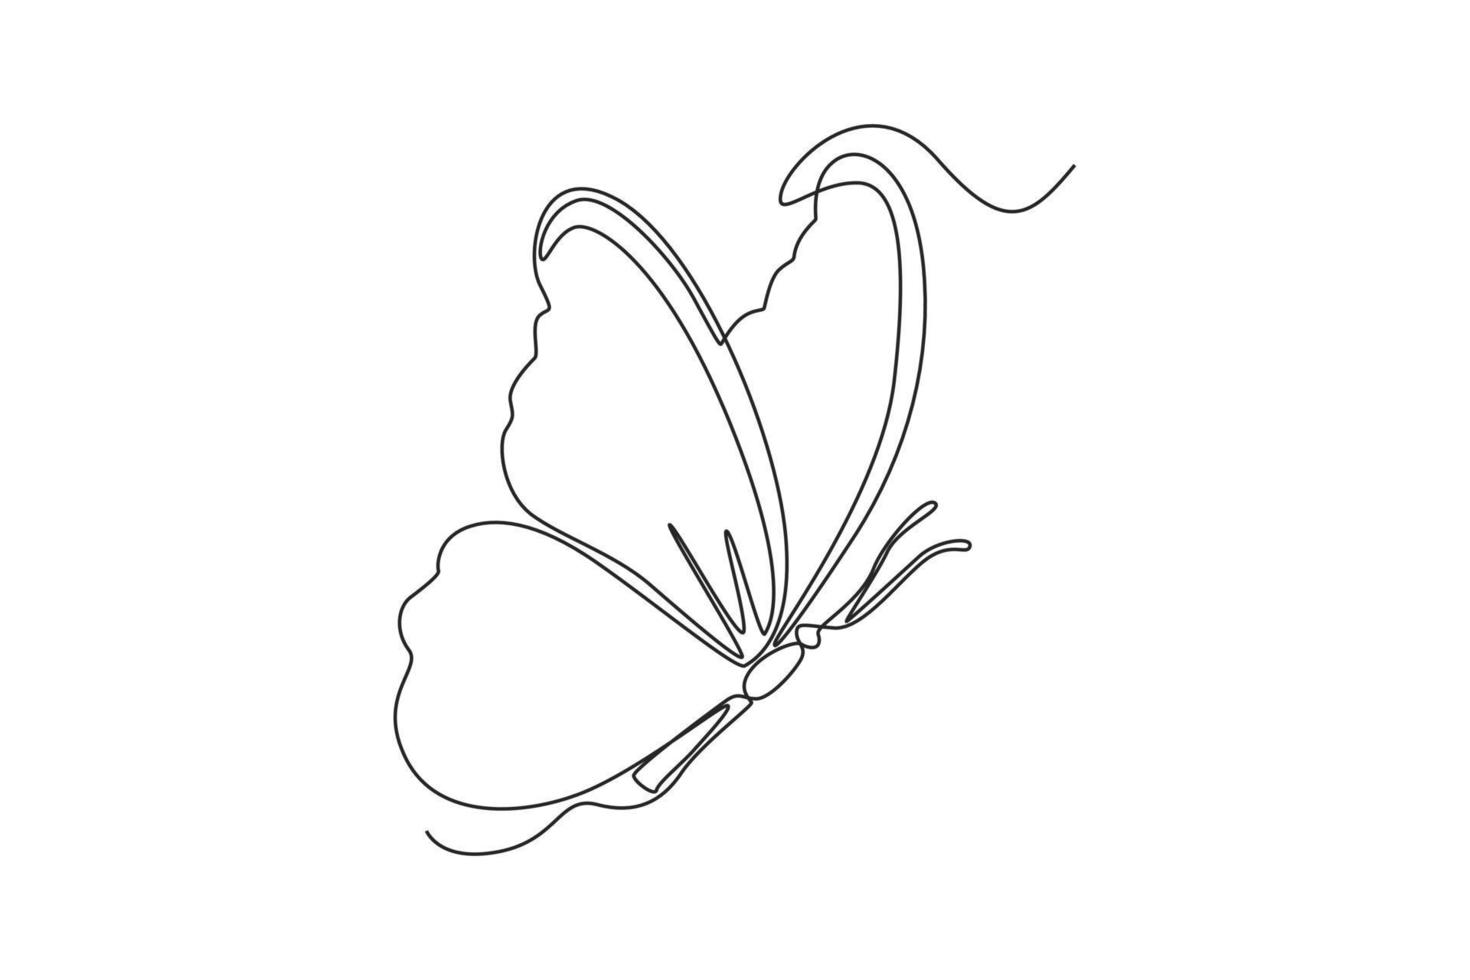 doorlopend een lijn tekening vlinder. voorjaar concept. single lijn trek ontwerp vector grafisch illustratie.